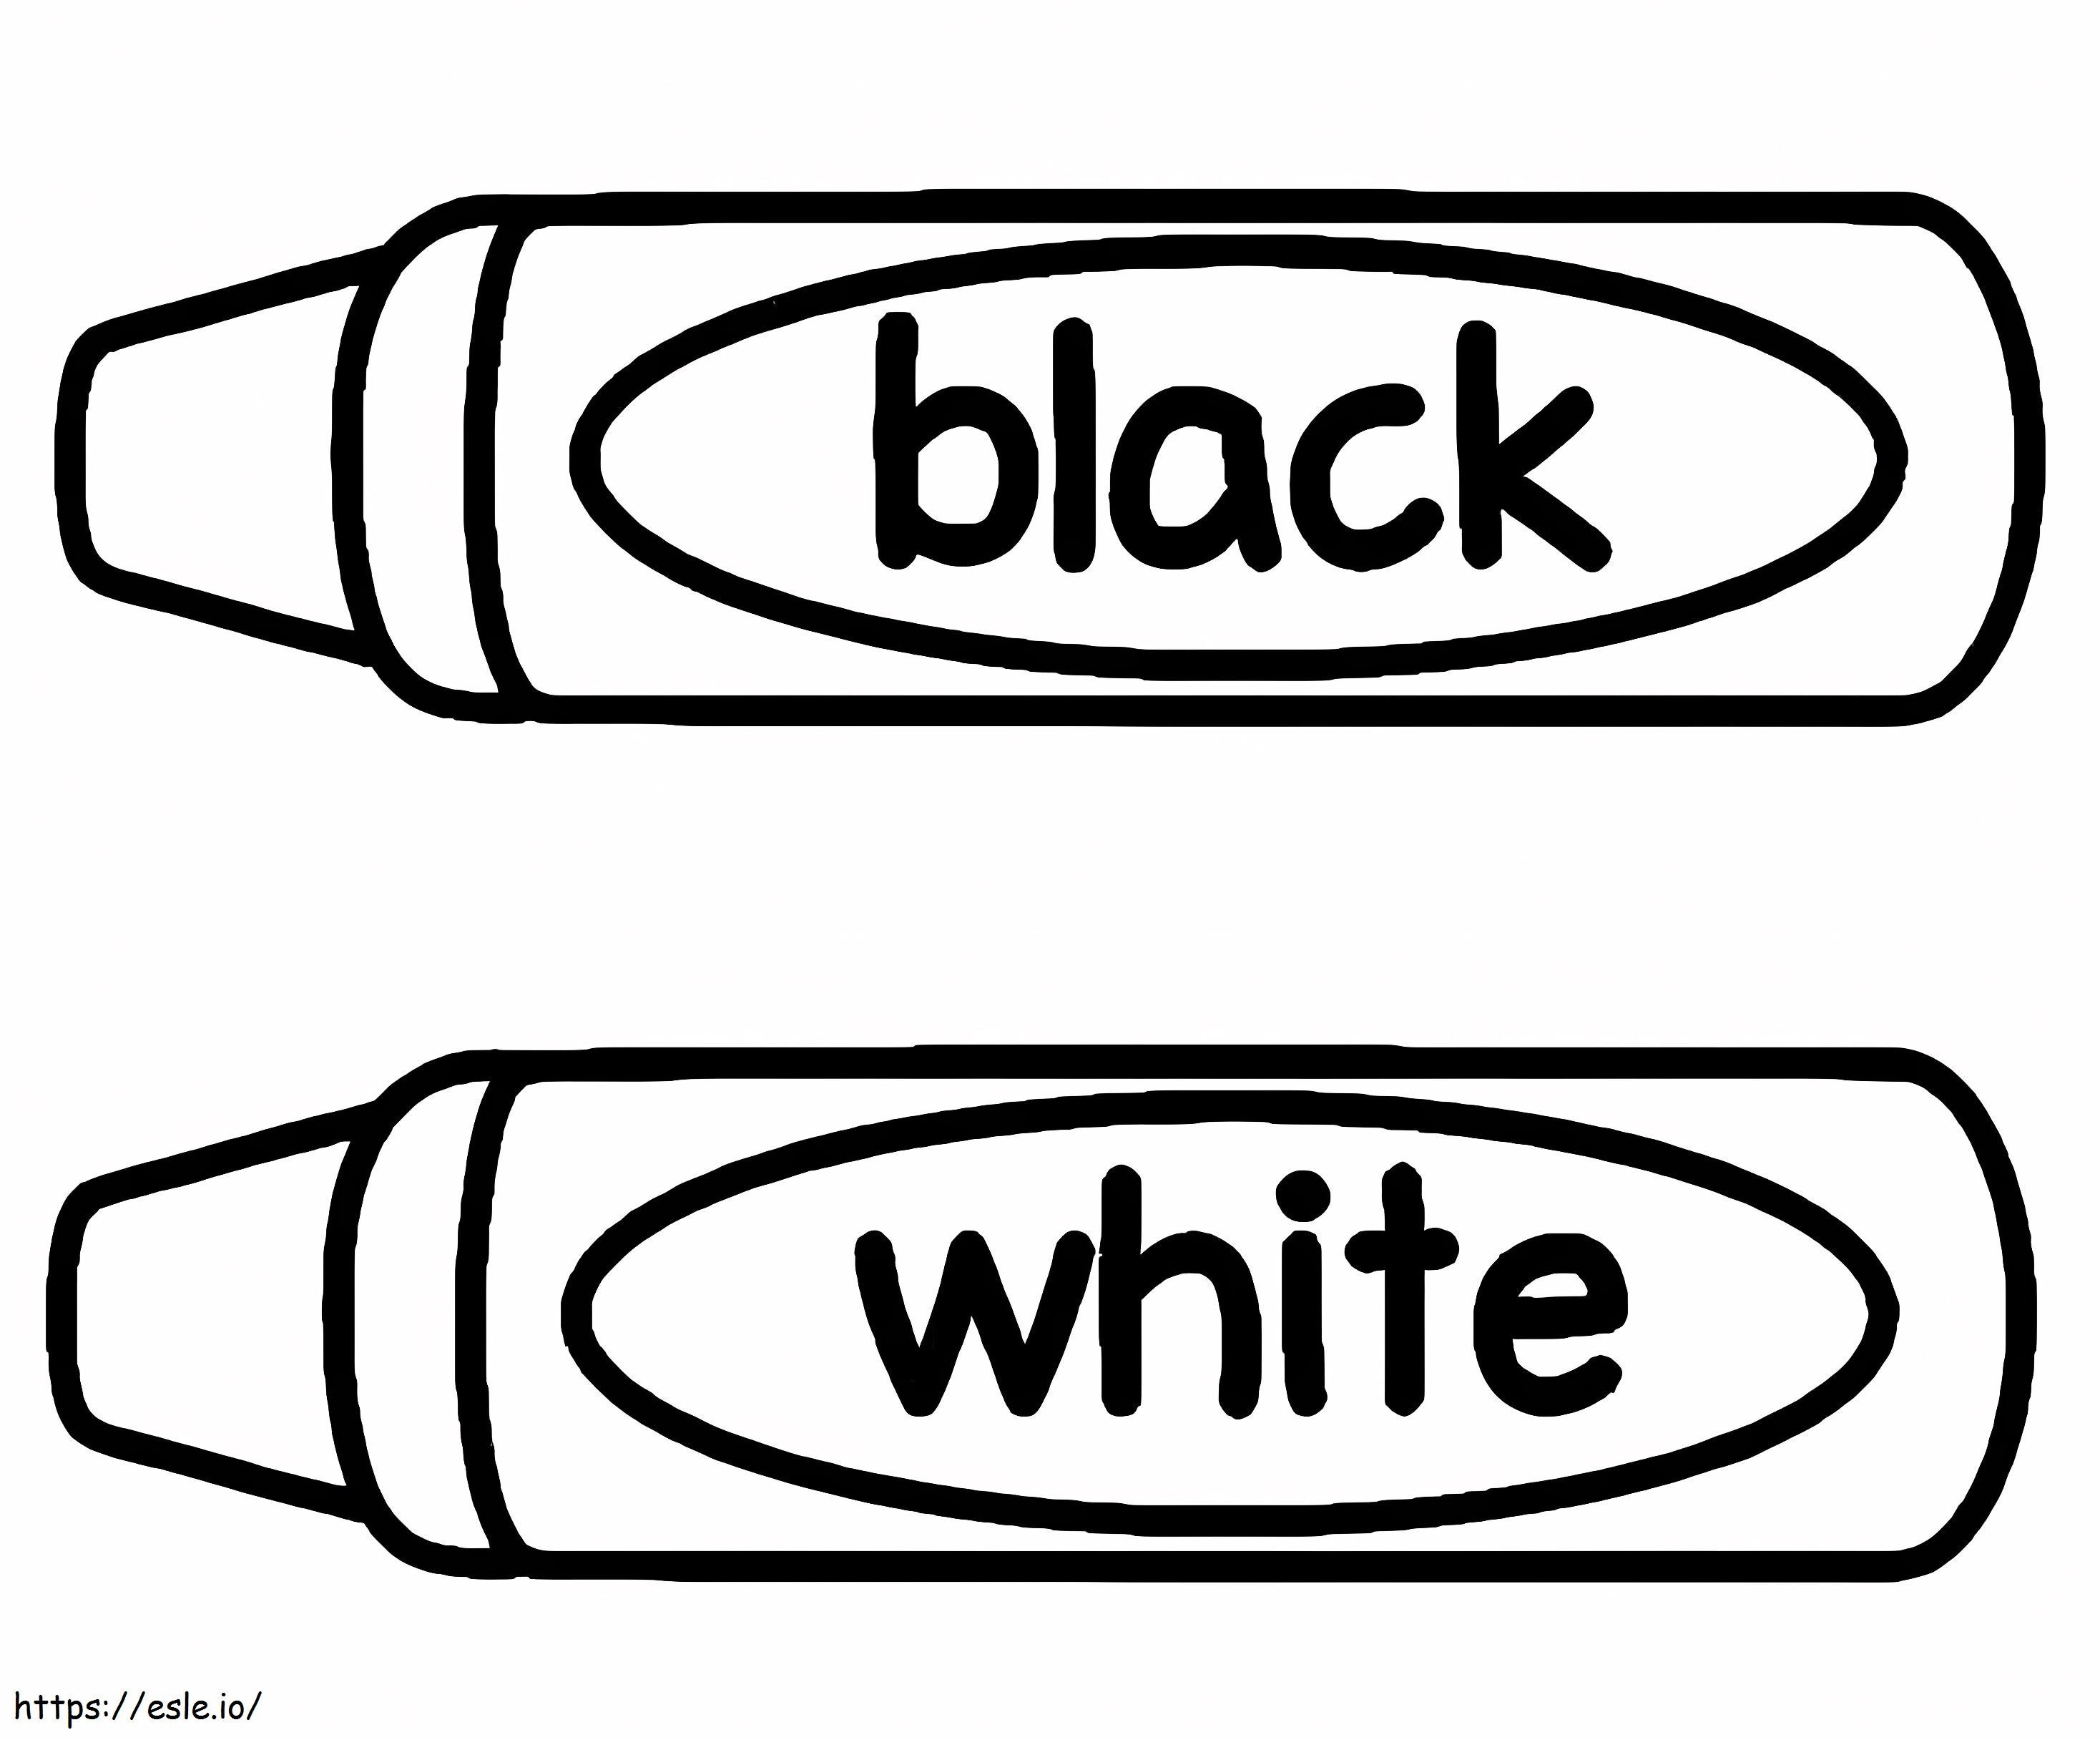 Siyah Beyaz Boya Kalemi boyama